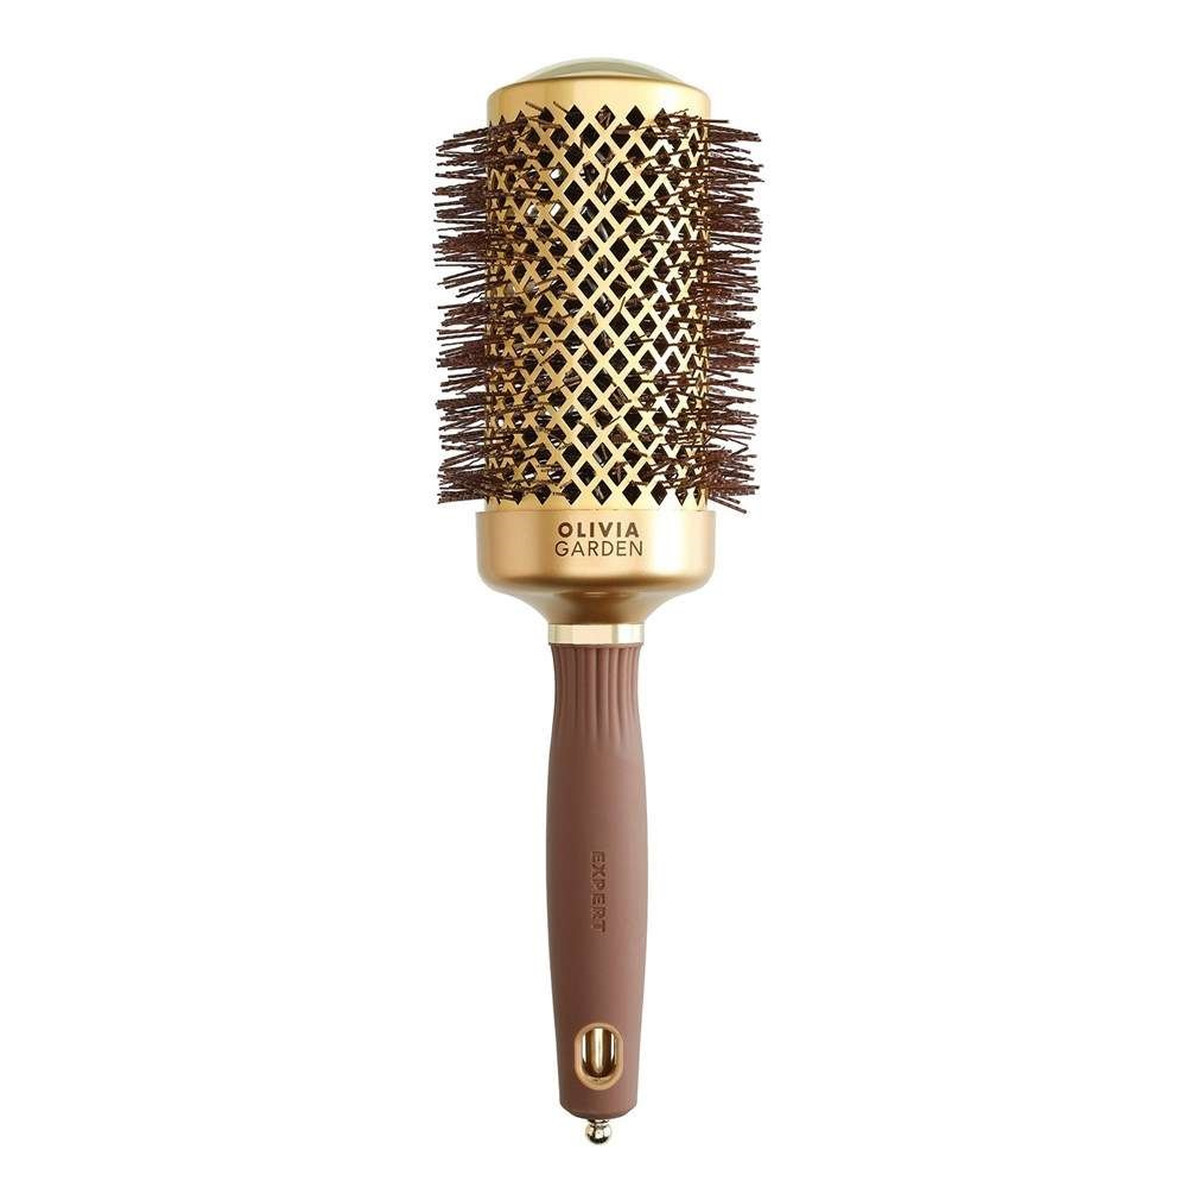 Olivia Garden Expert blowout shine szczotka do modelowania i suszenia włosów gold/brown 55mm